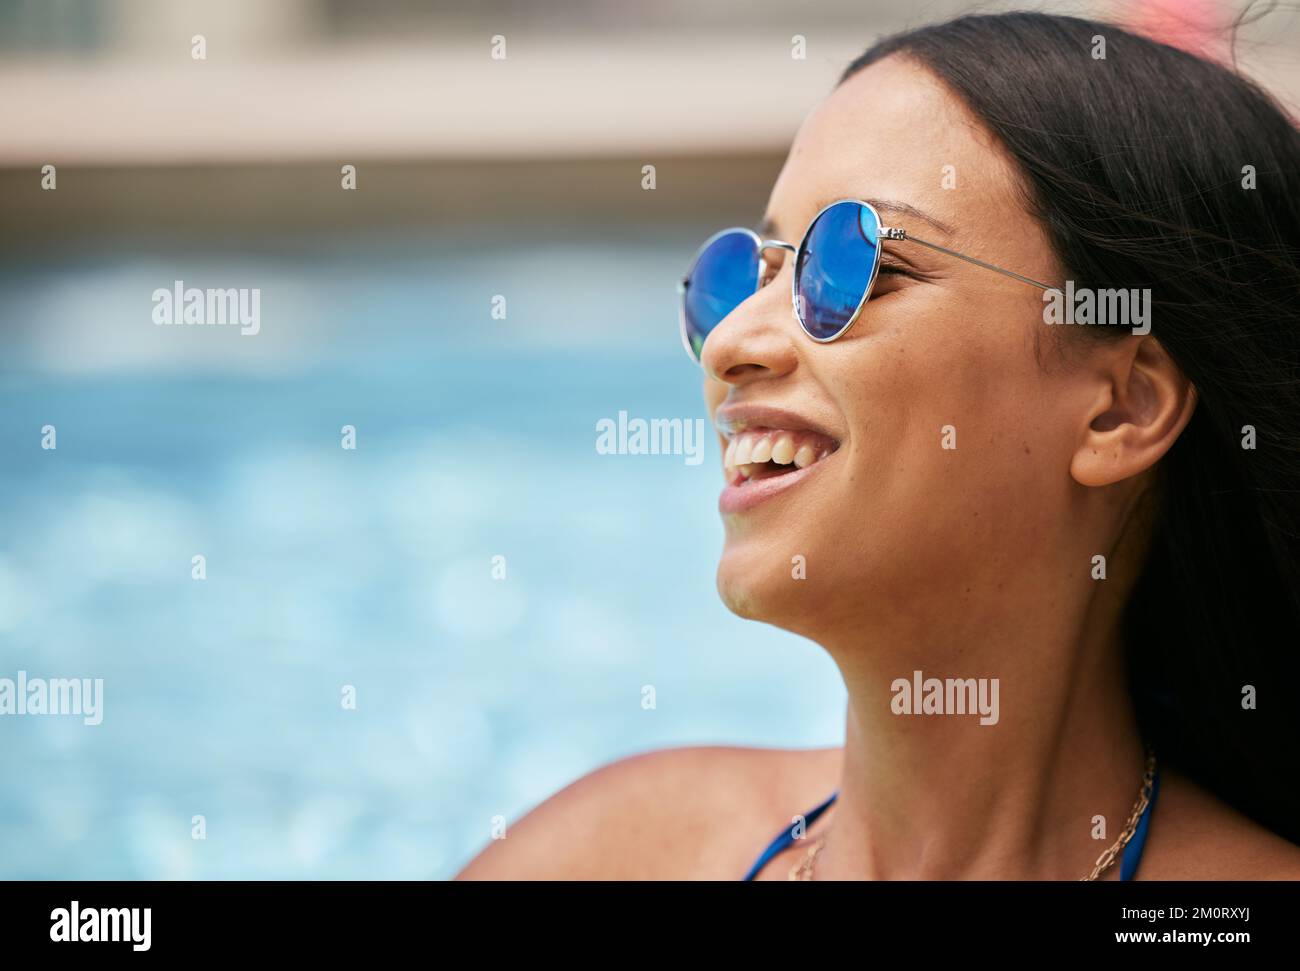 Femme, lunettes de soleil et rire au bord de la piscine pendant les  vacances d'été, les vacances de vacances ou le plaisir de voyage tropical.  Mockup, sourire heureux ou étudiant de tourisme